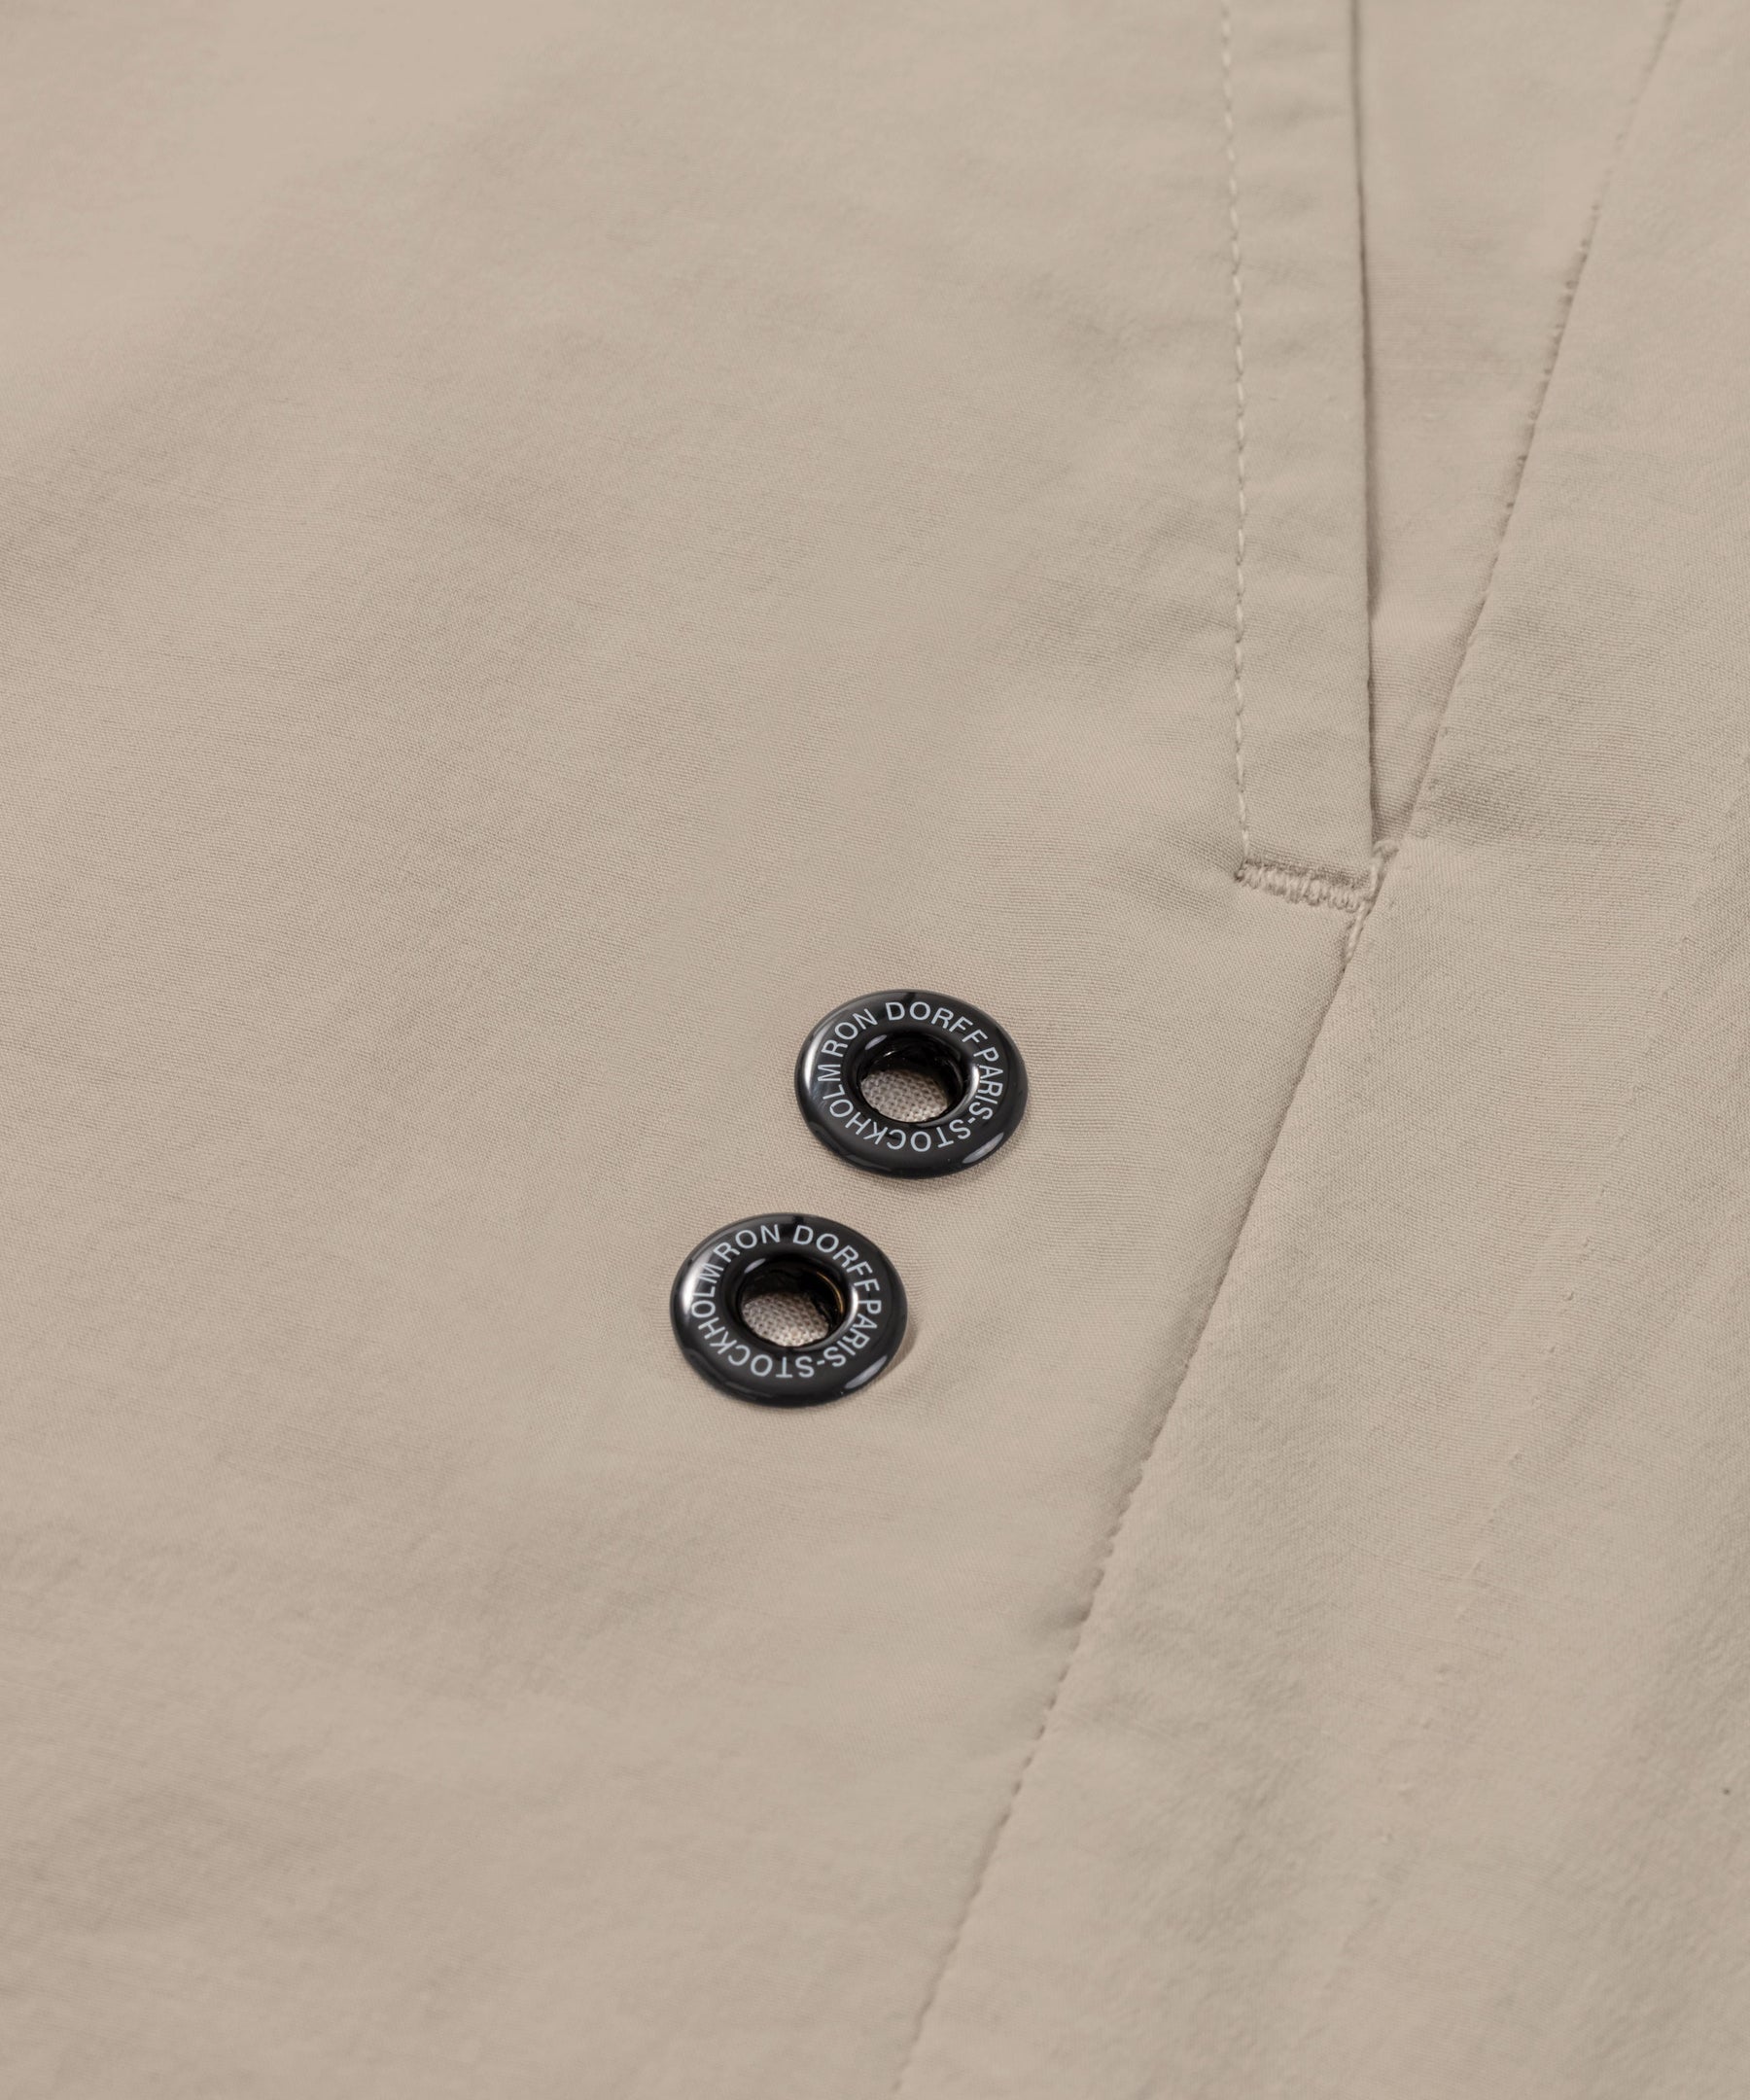 Pantalon léger en coton élasthanne: Gris beige